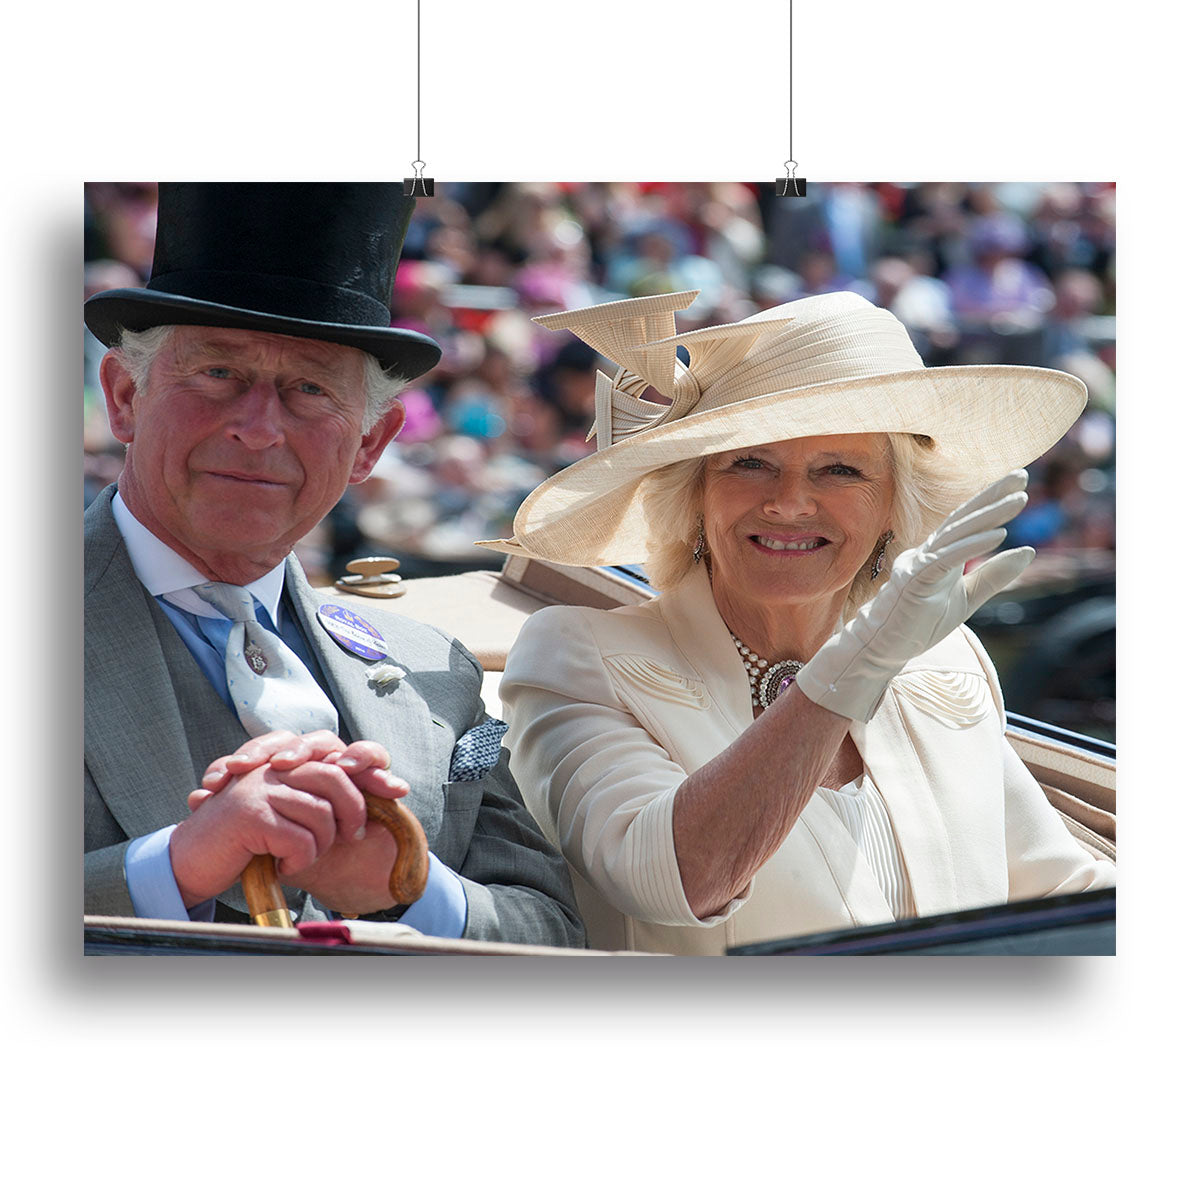 Prince Charles and Camilla at the Royal Ascot Canvas Print or Poster - Canvas Art Rocks - 2